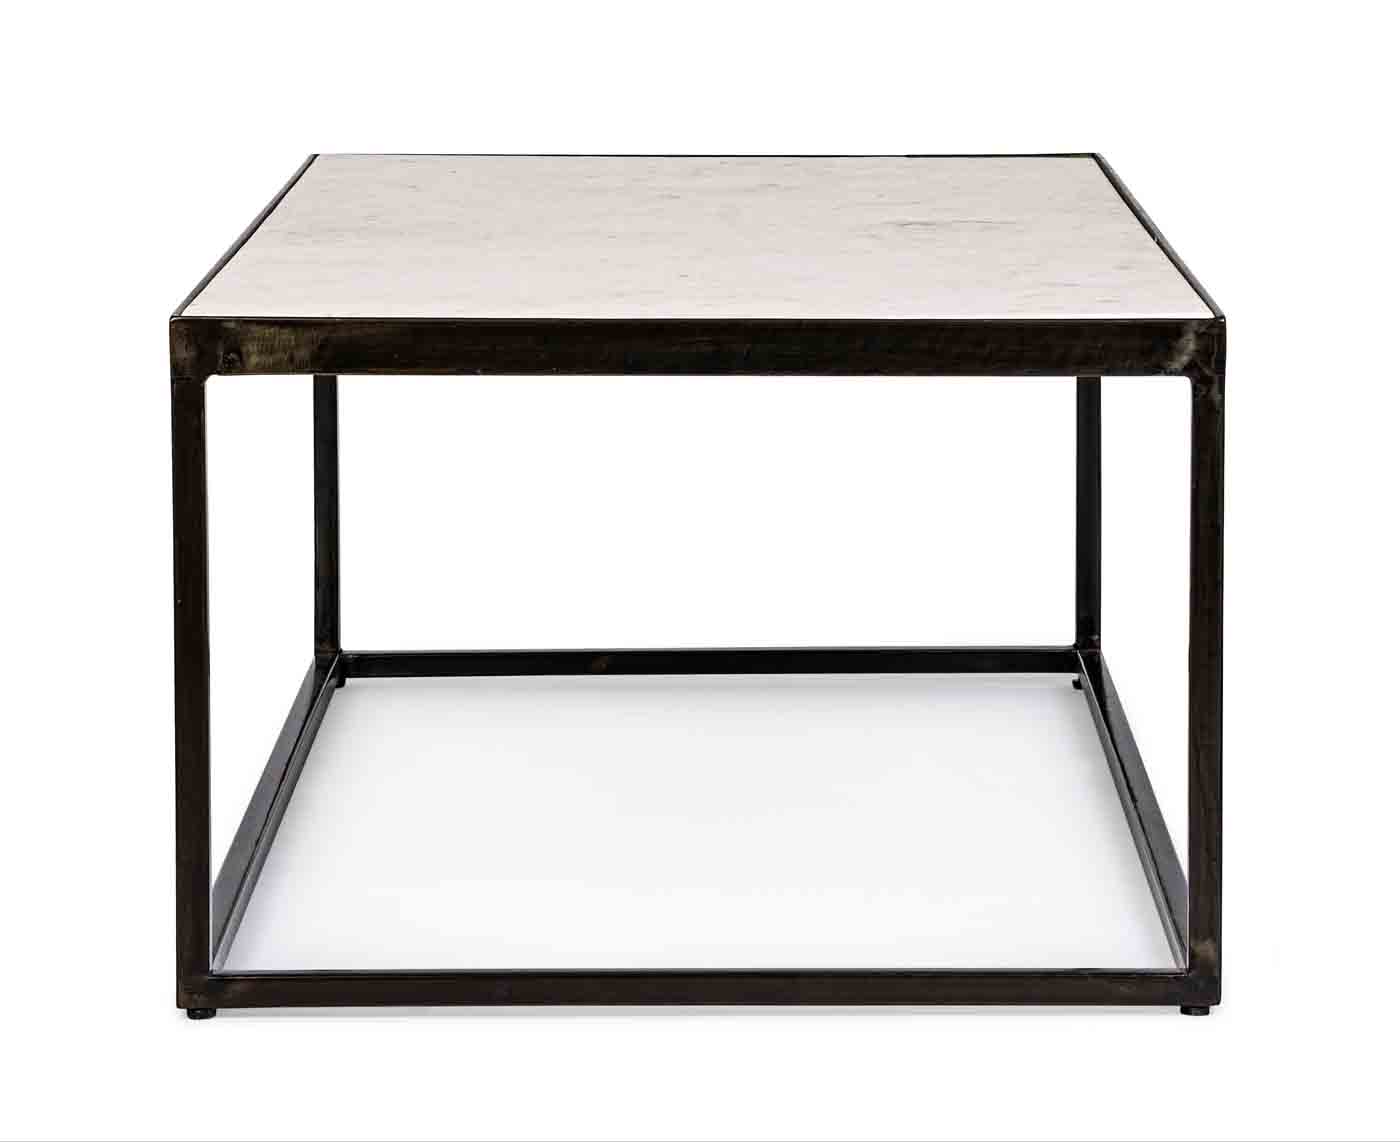 Der stilvolle Beistelltisch Lambeth wurde aus einem Stahlgestell gefertigt, die Oberfläche ist aus Marmor, welche dem Tisch einen hochwertigen Touch verleiht.